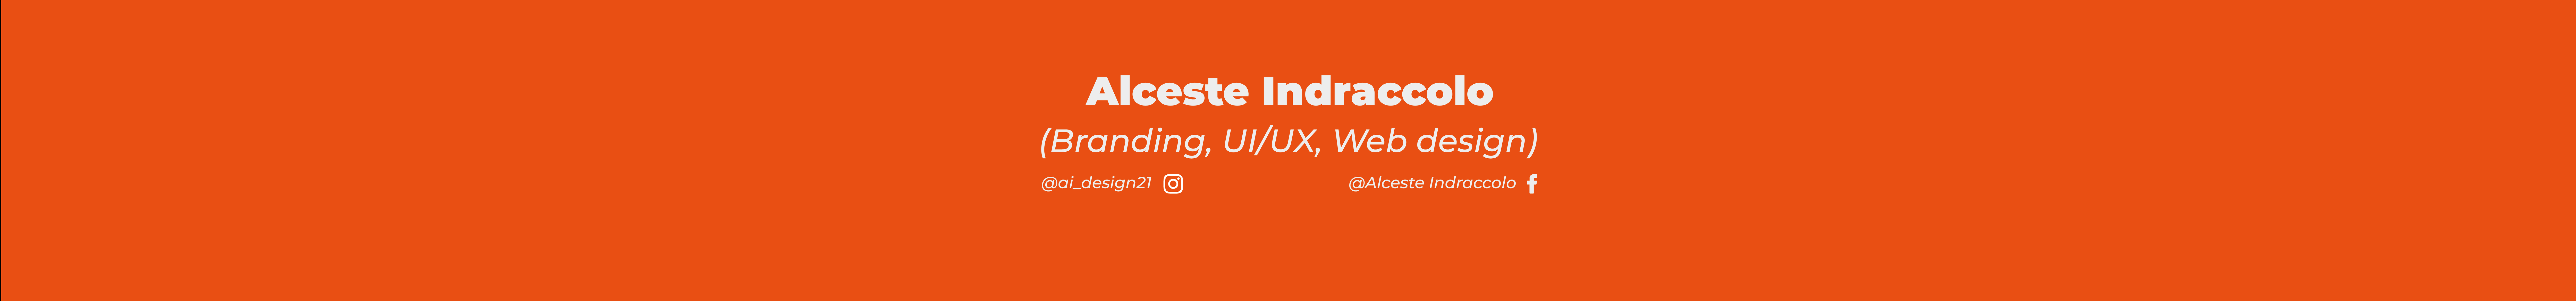 Alceste Indraccolo profil başlığı